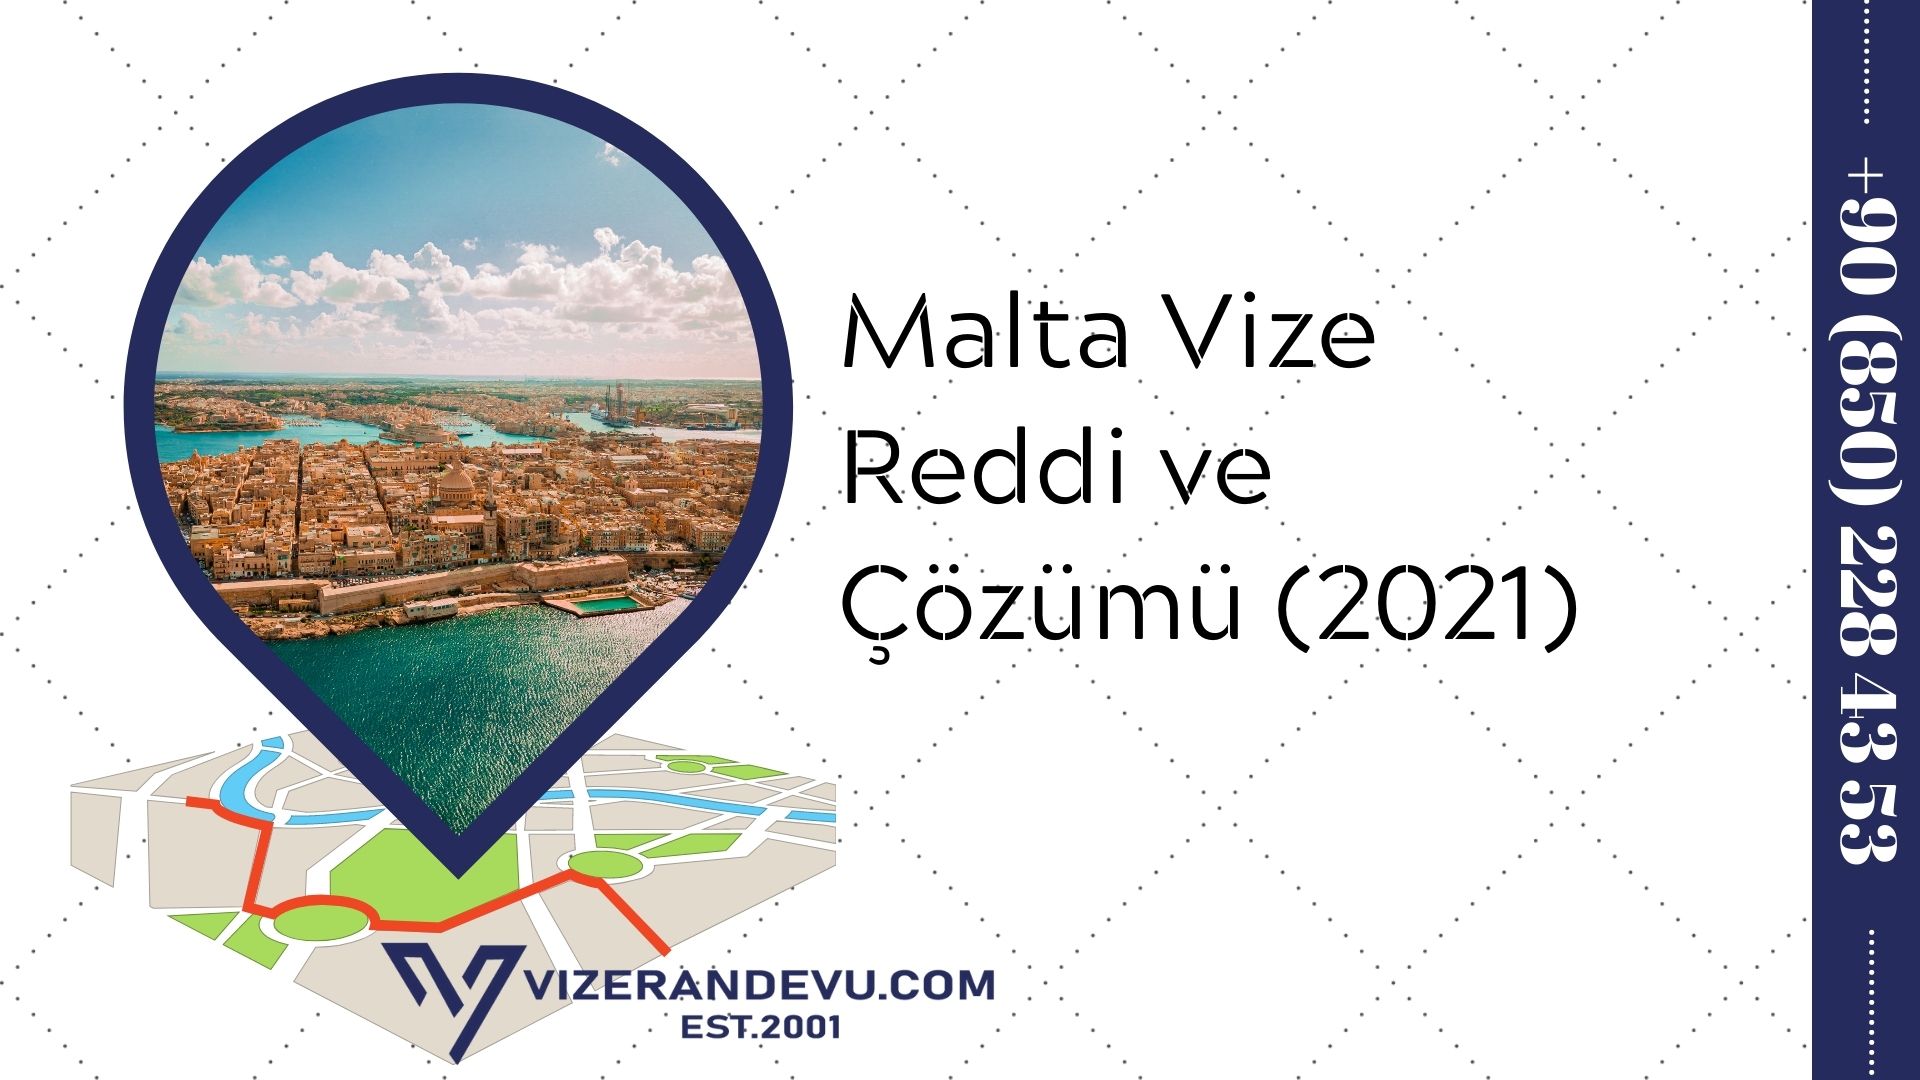 Malta Vize Reddi ve Çözümü (2021)